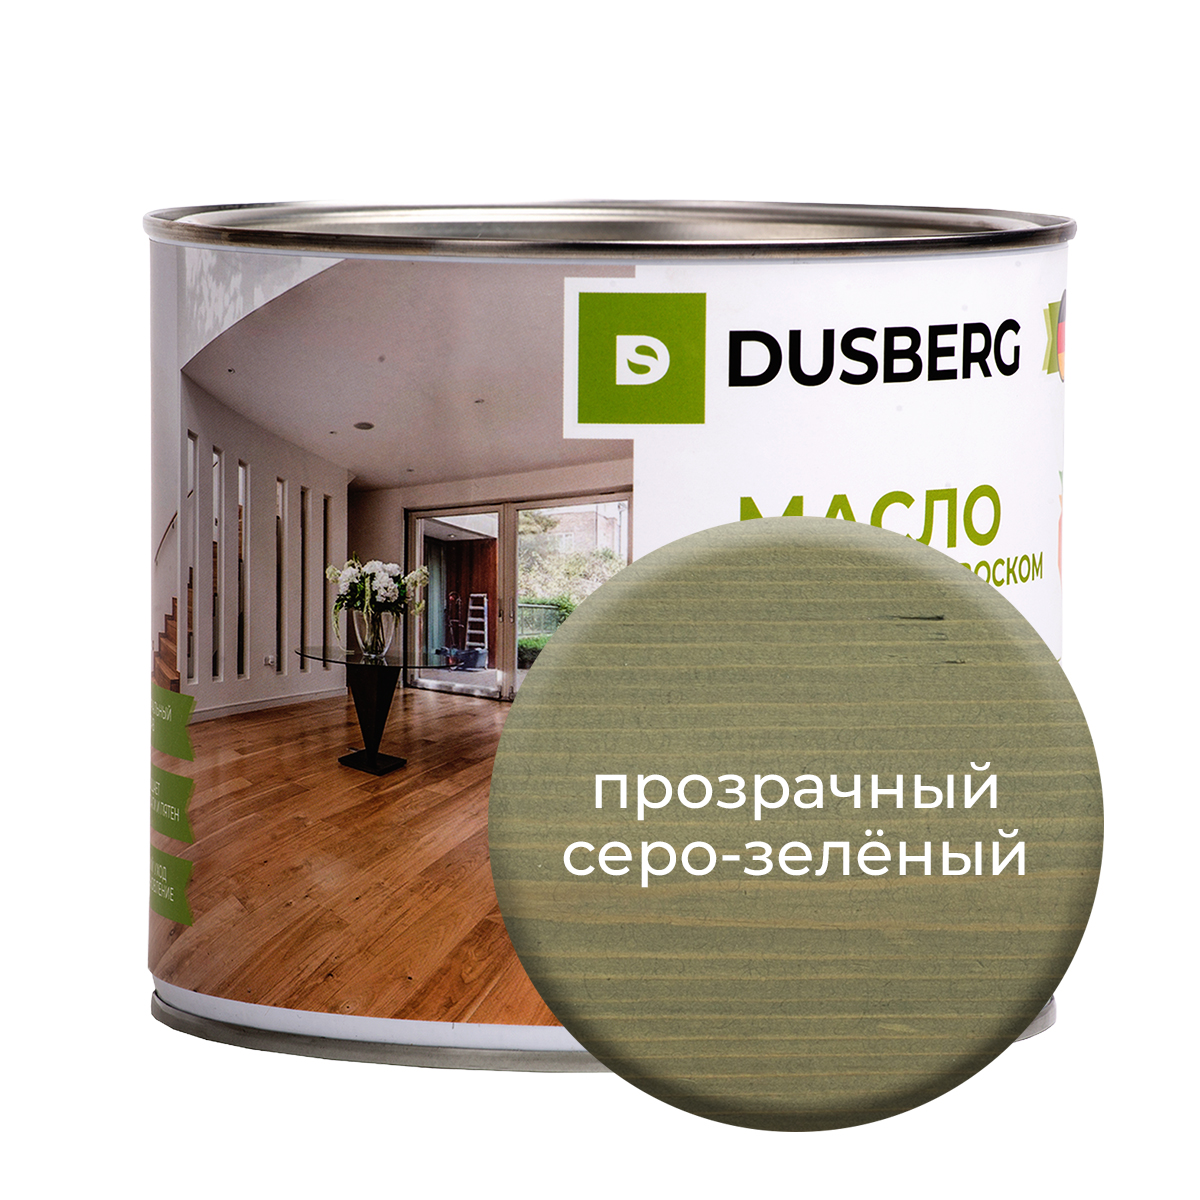 Масло Dusberg для стен на бесцветной основе, 750 мл Прозрачный серо-зеленый масло dusberg для дерева на бесцветной основе 750 мл орех